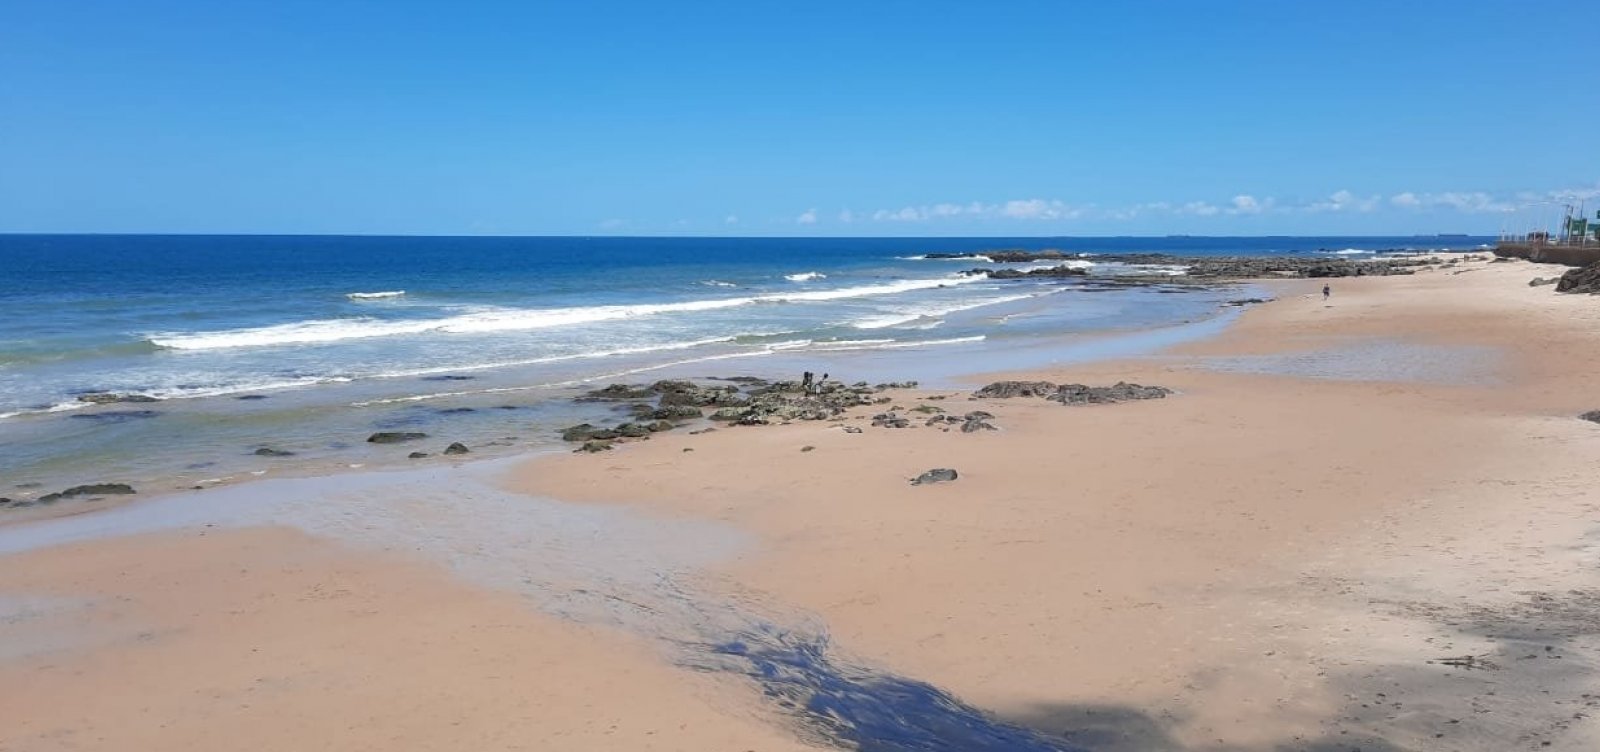 ACM Neto deve anunciar nesta sexta flexibilização das praias de Salvador